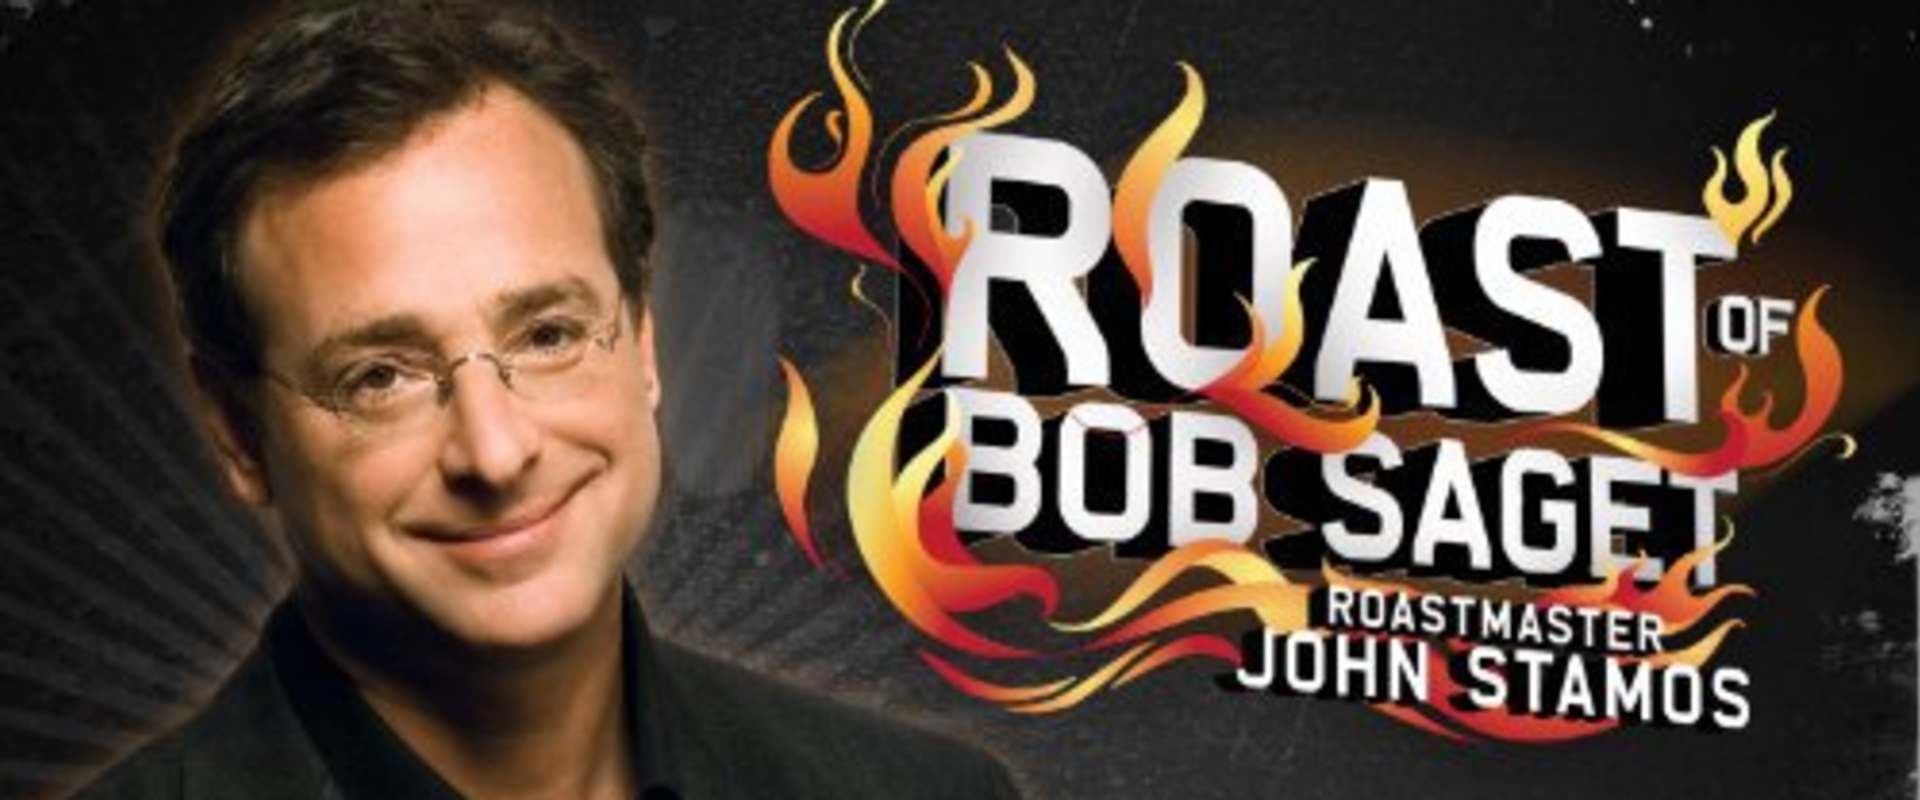 Comedy Central Roast of Bob Saget background 1